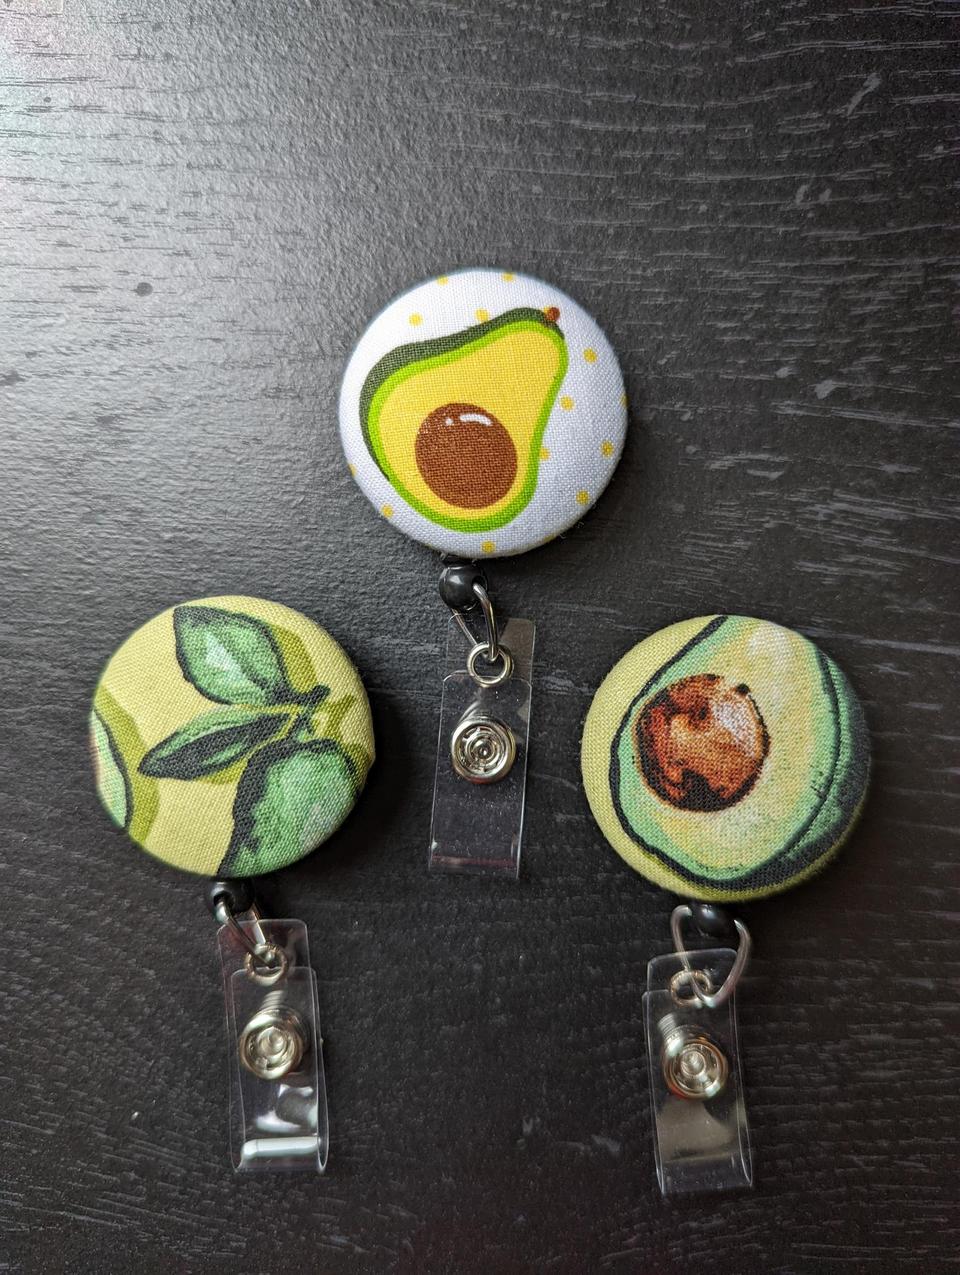 Avocado Badge Reels for Work or School IDs